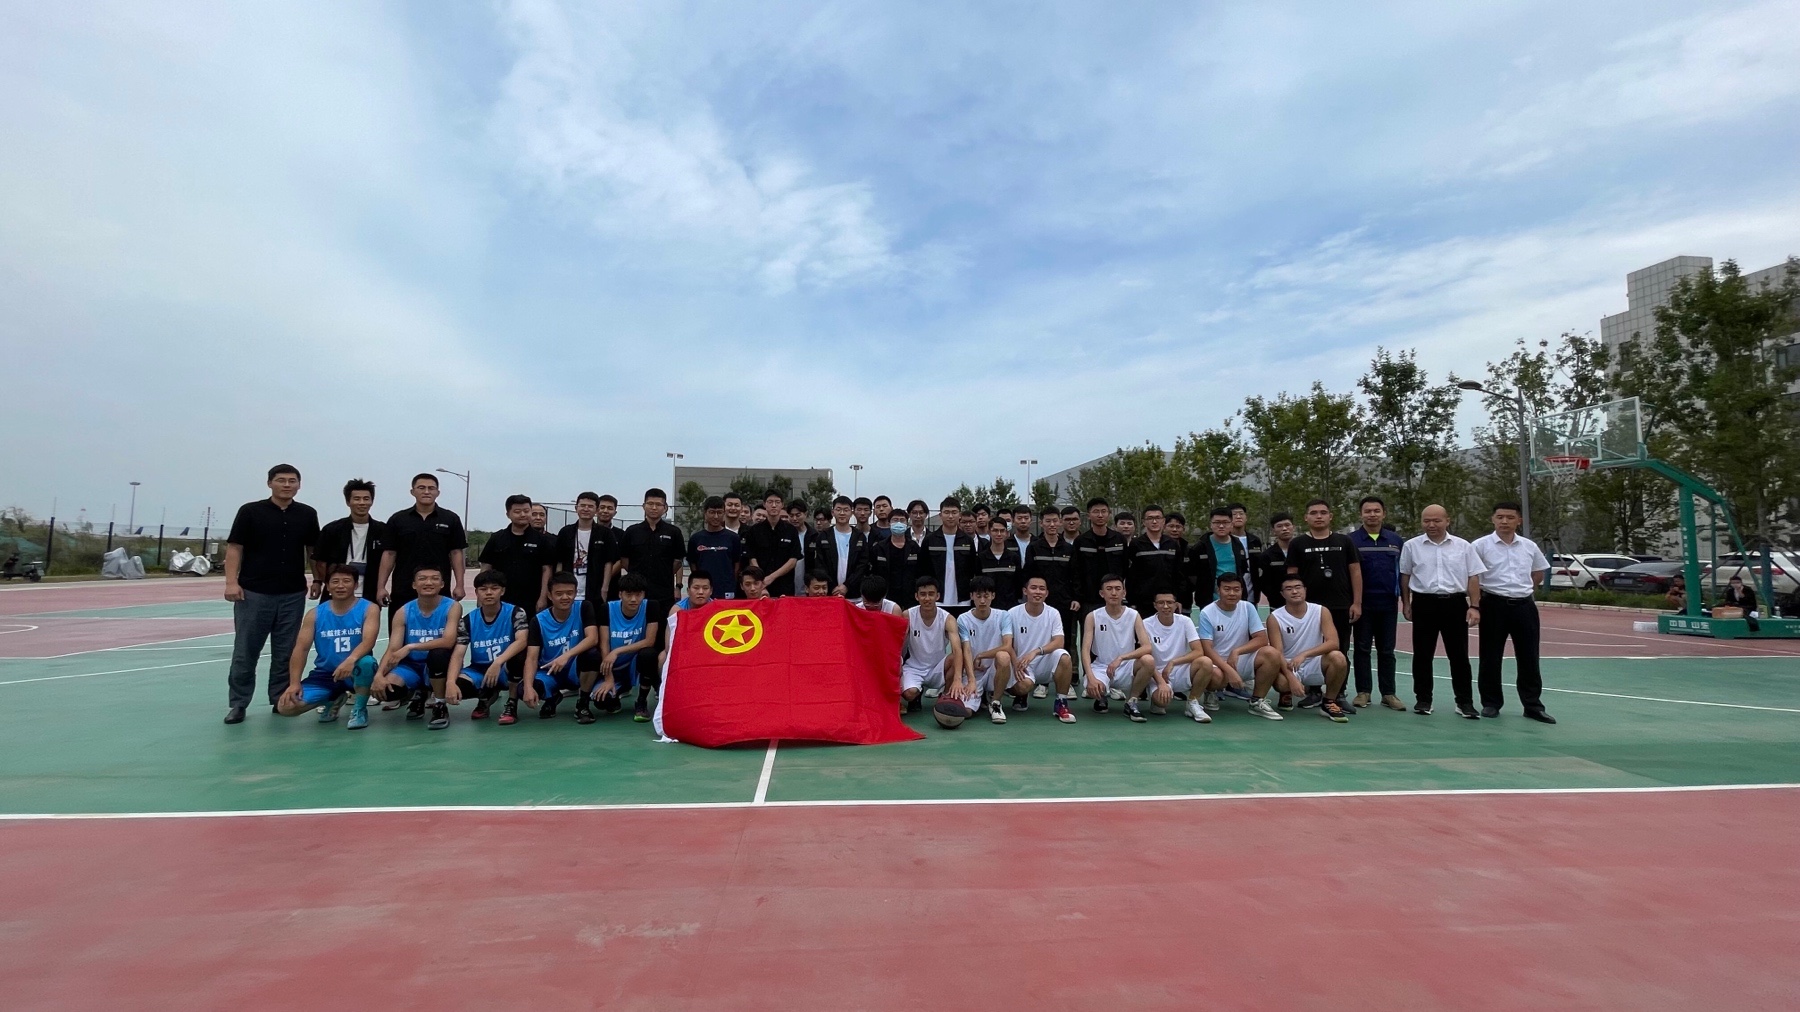 东航技术山东分公司与山航工程技术公司举办篮球友谊赛